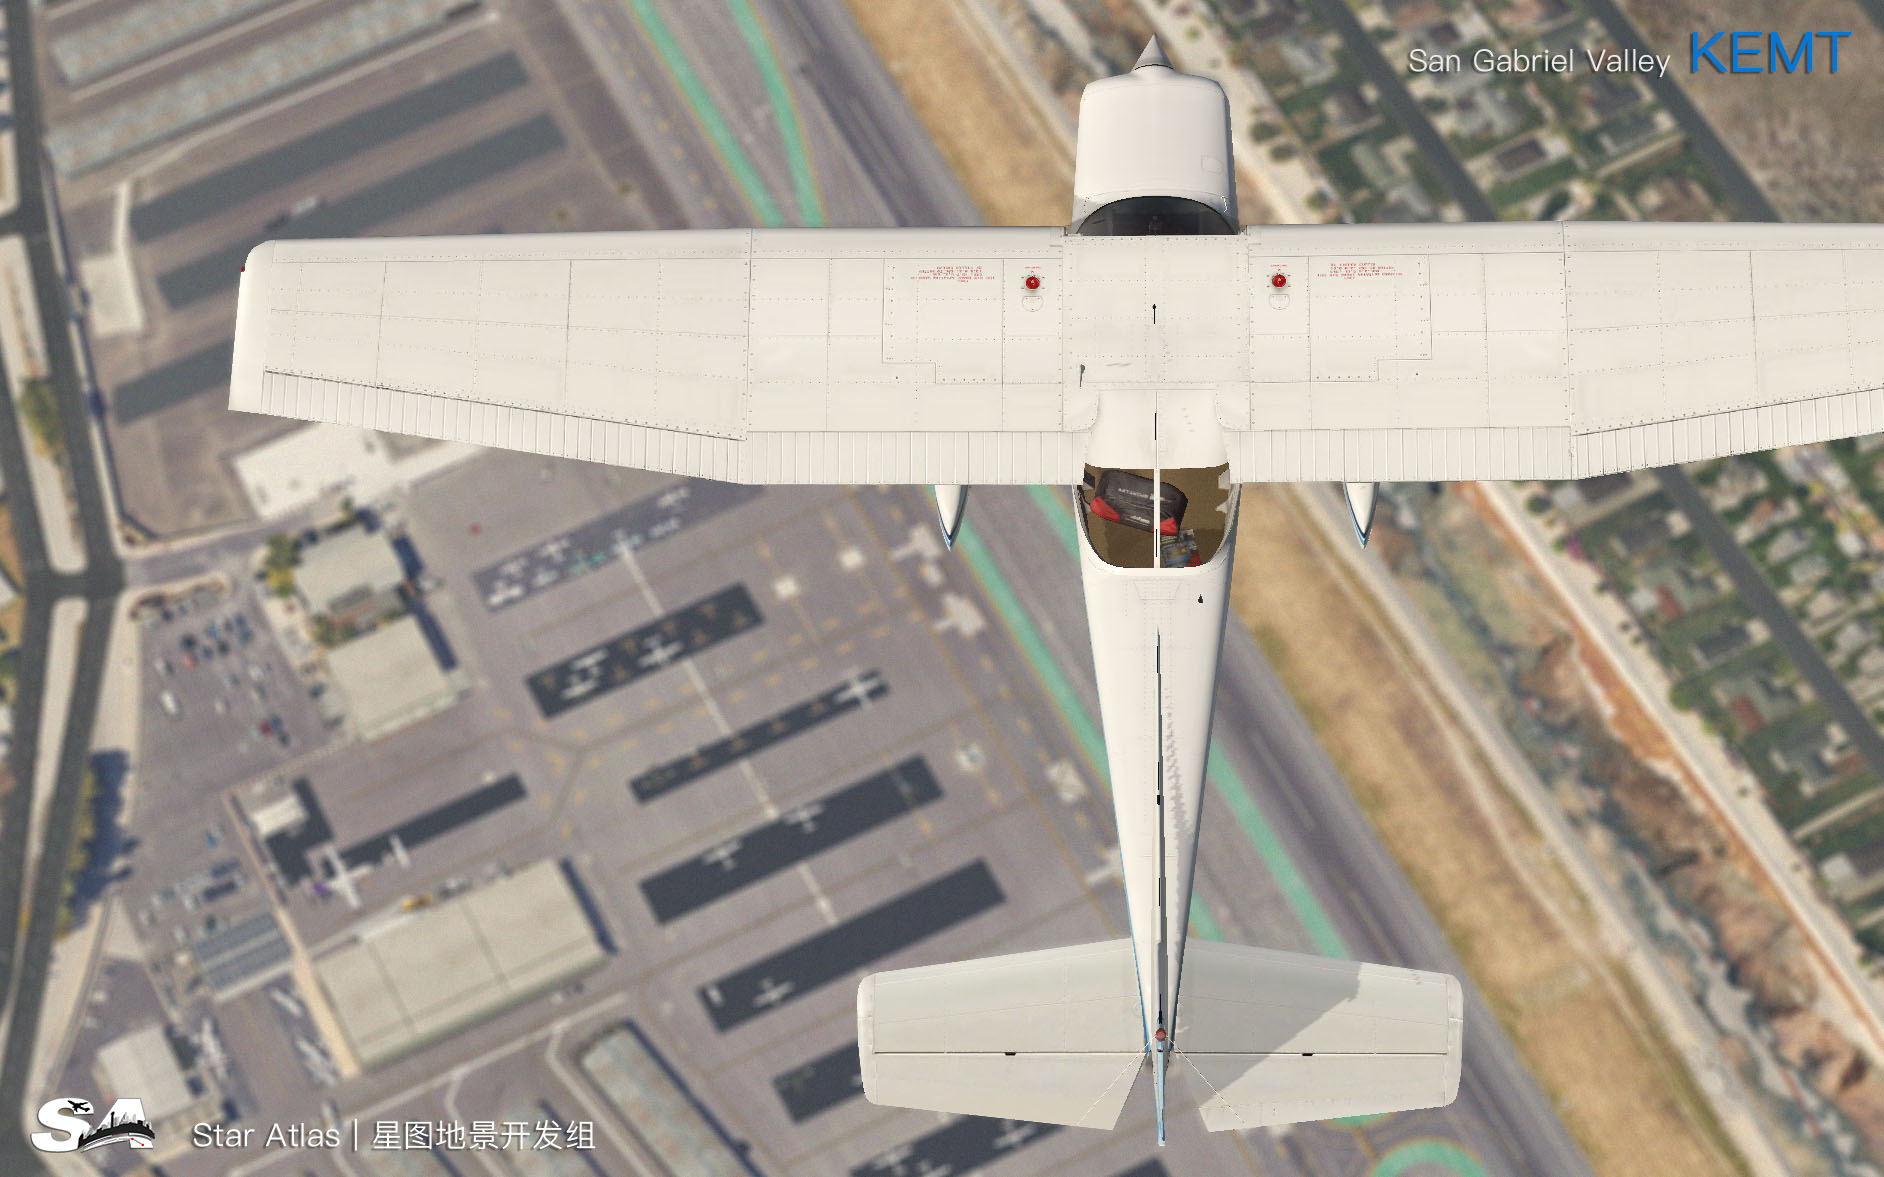 【X-Plane】KEMT-圣盖博谷机场 HD 1.0-3778 